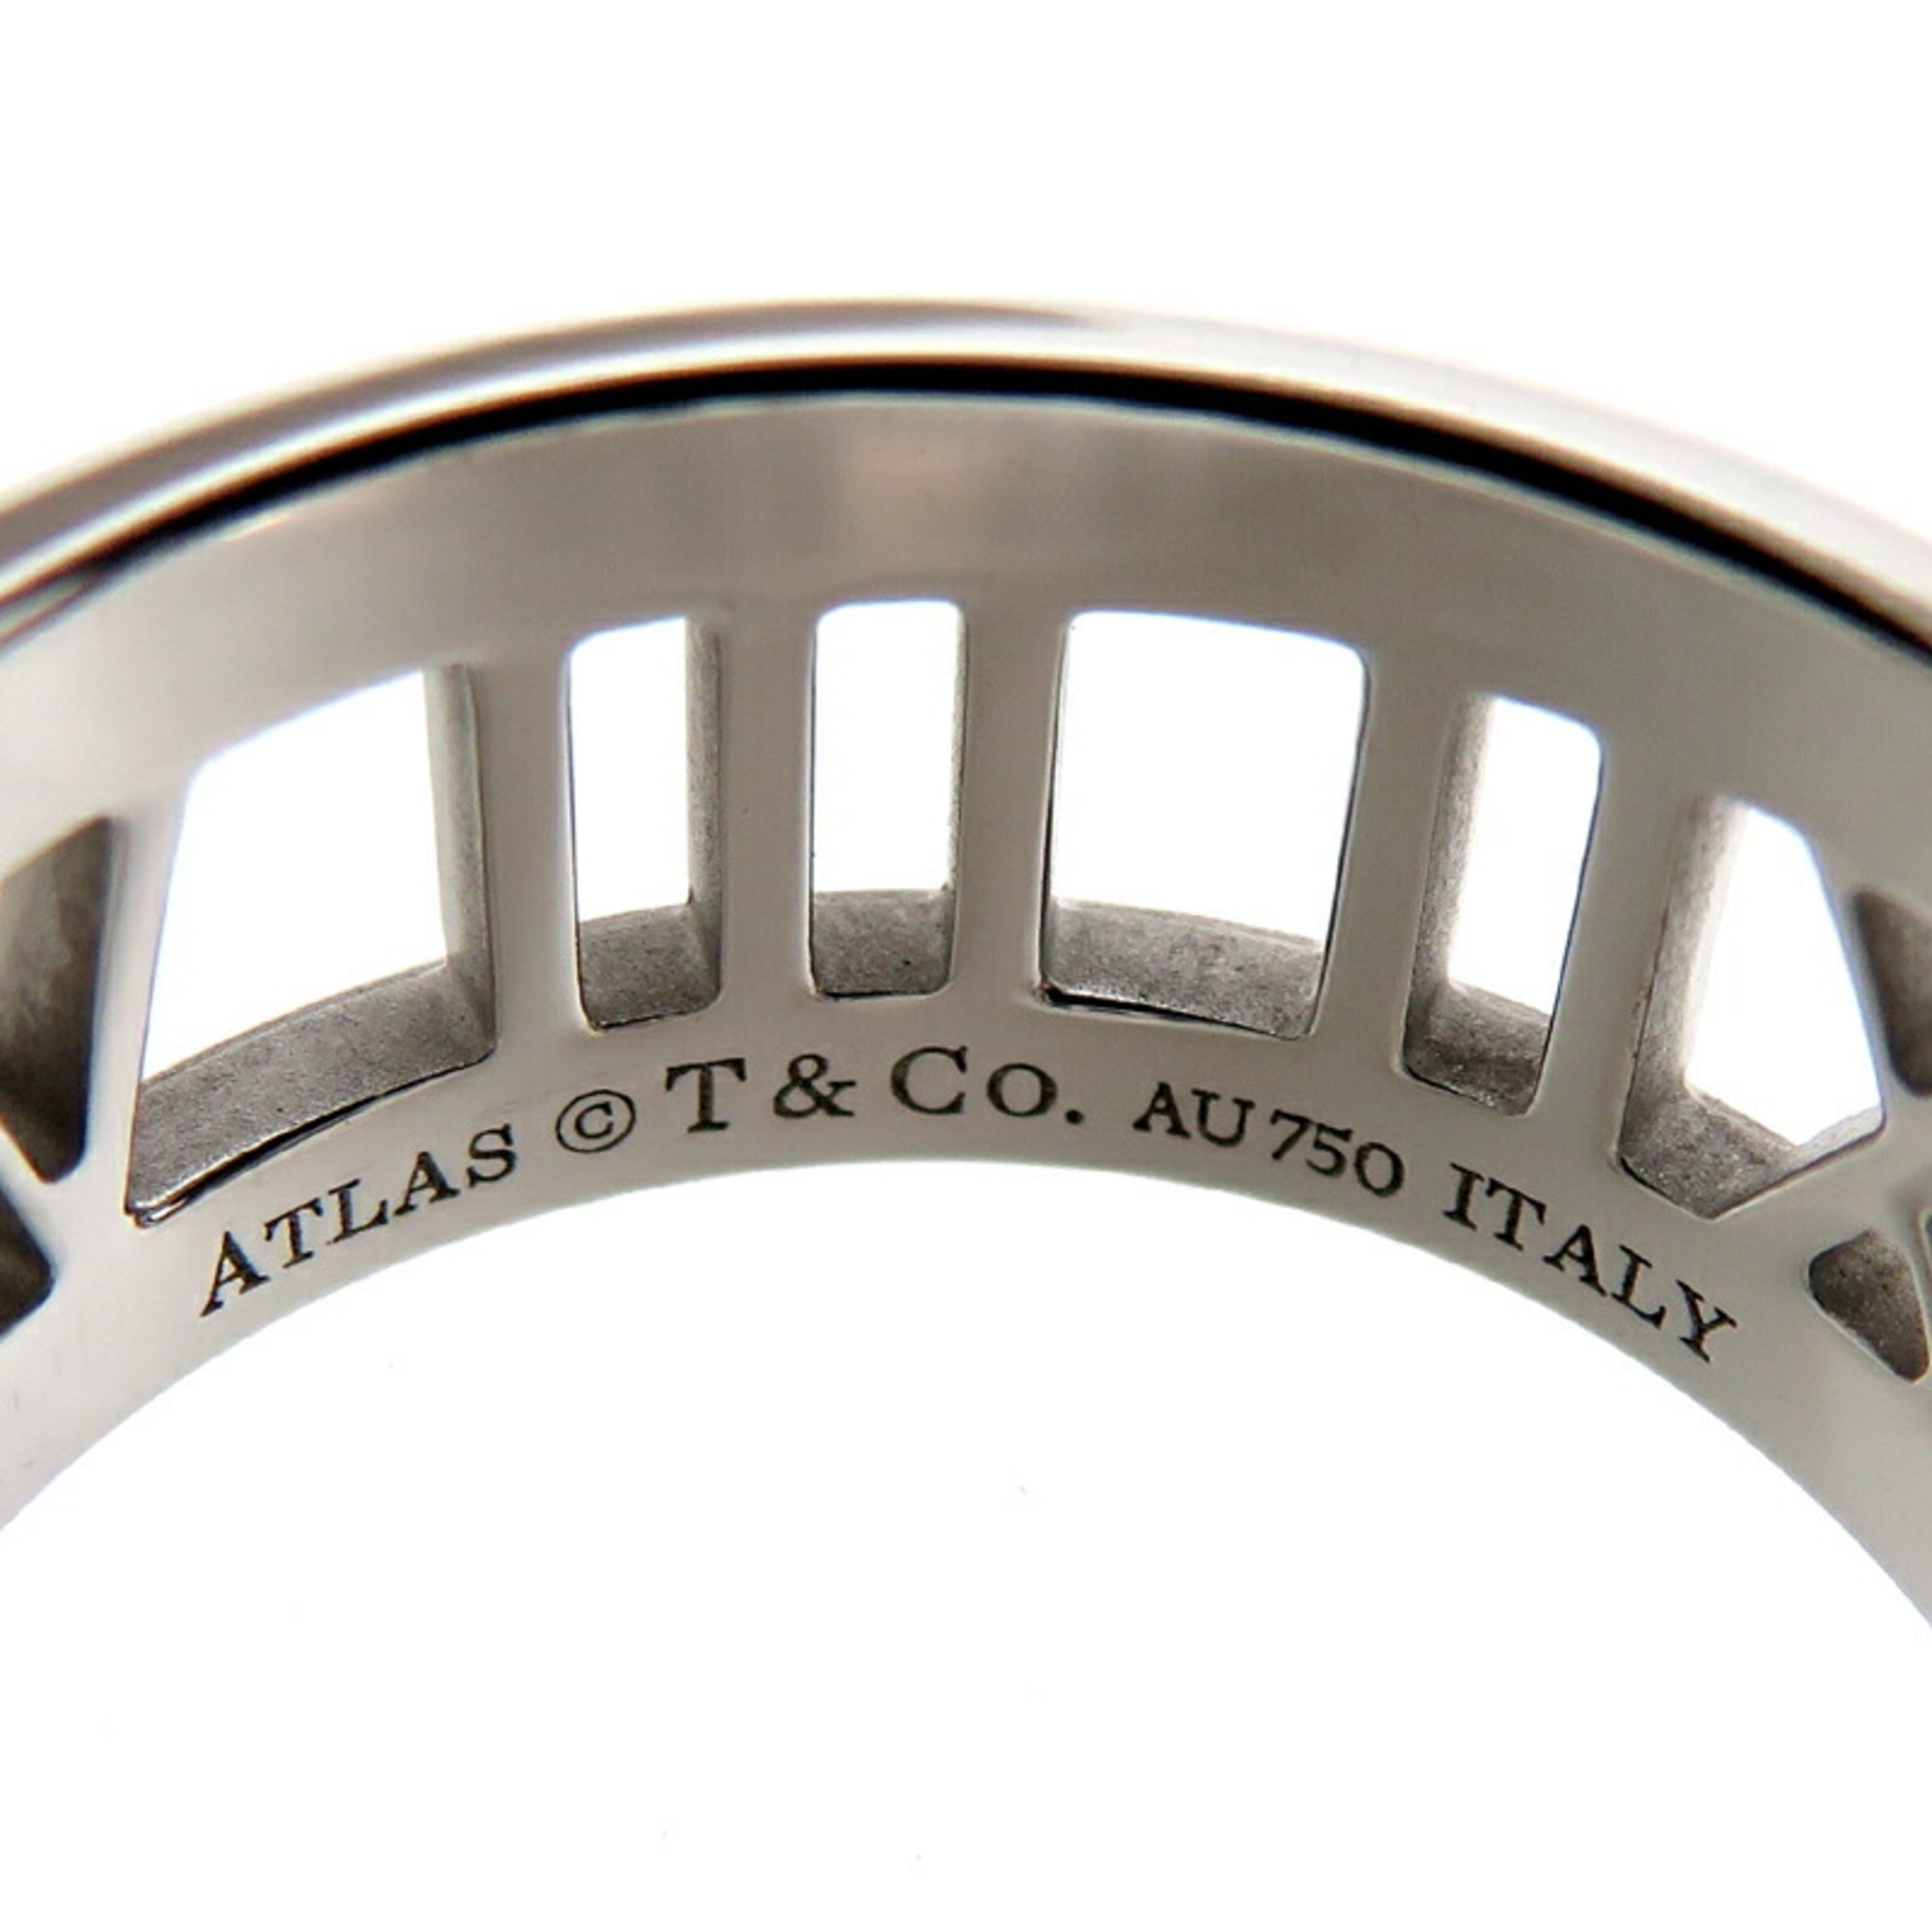 Tiffany Diamond Atlas Ladies Ring, 750 White Gold, Size 13